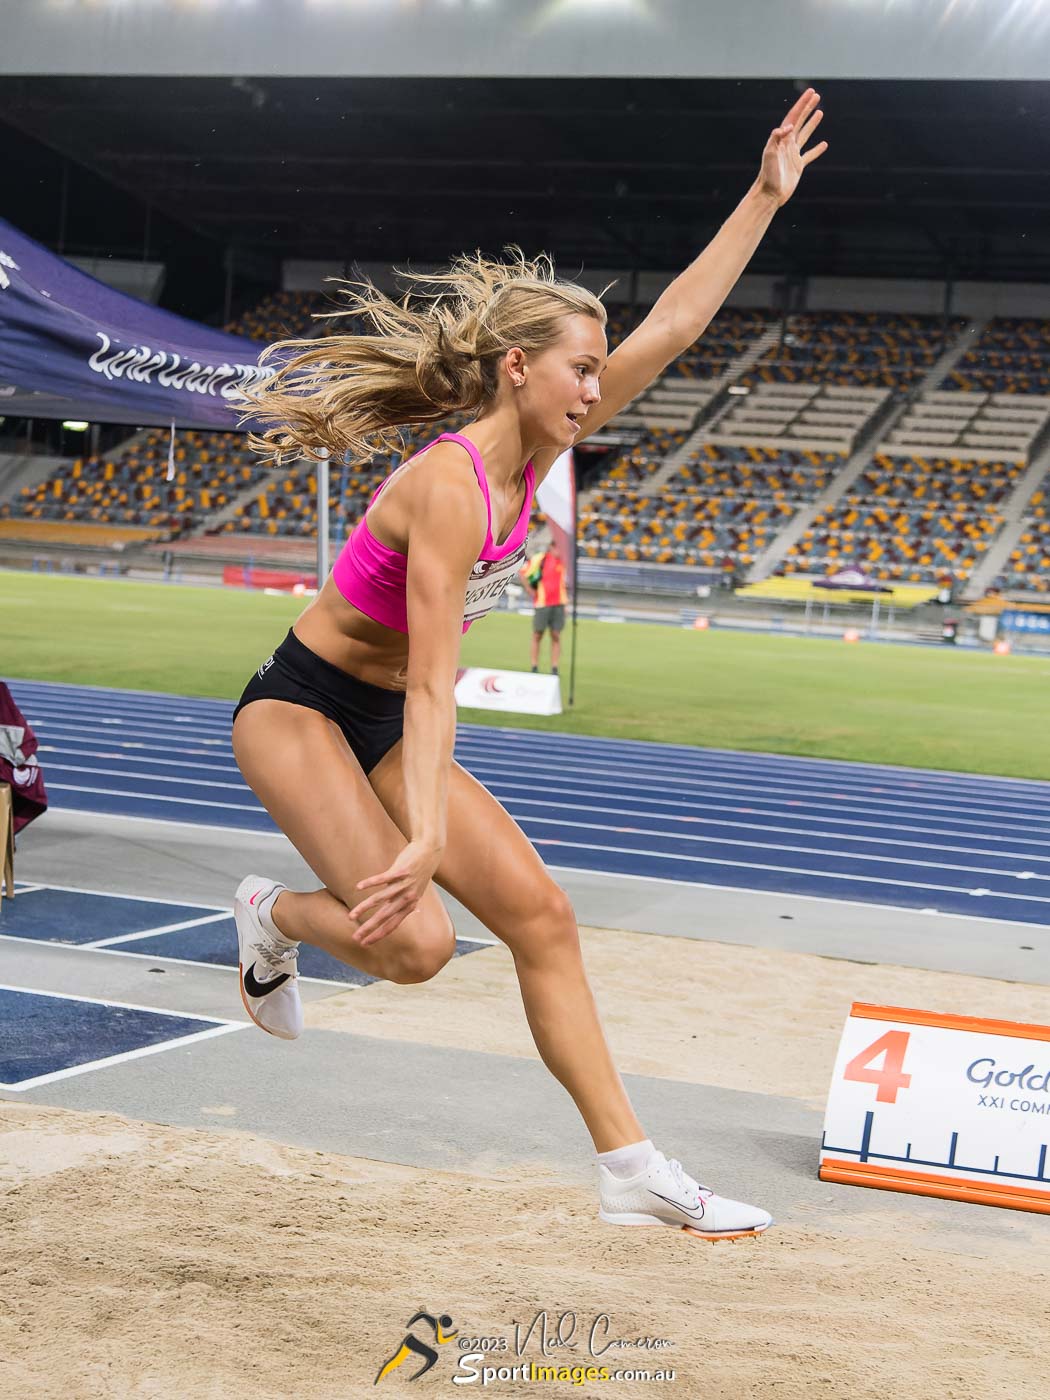 Zoe Chester, Women Under 18 Long Jump